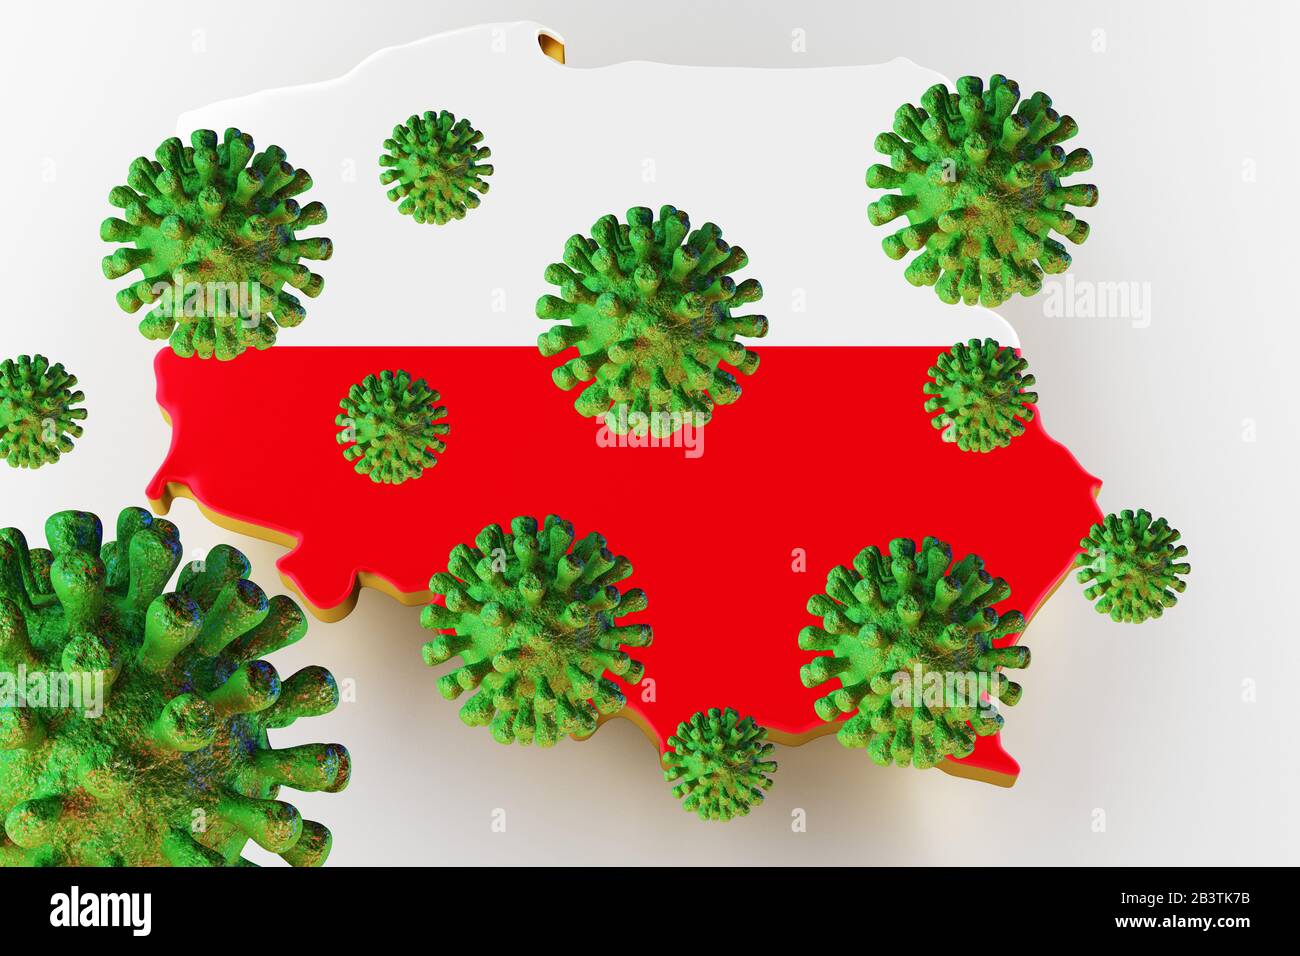 Virus 2019-ncov, Flur or Coronavirus with Poland map. Coronavirus from china. 3D rendering Stock Photo